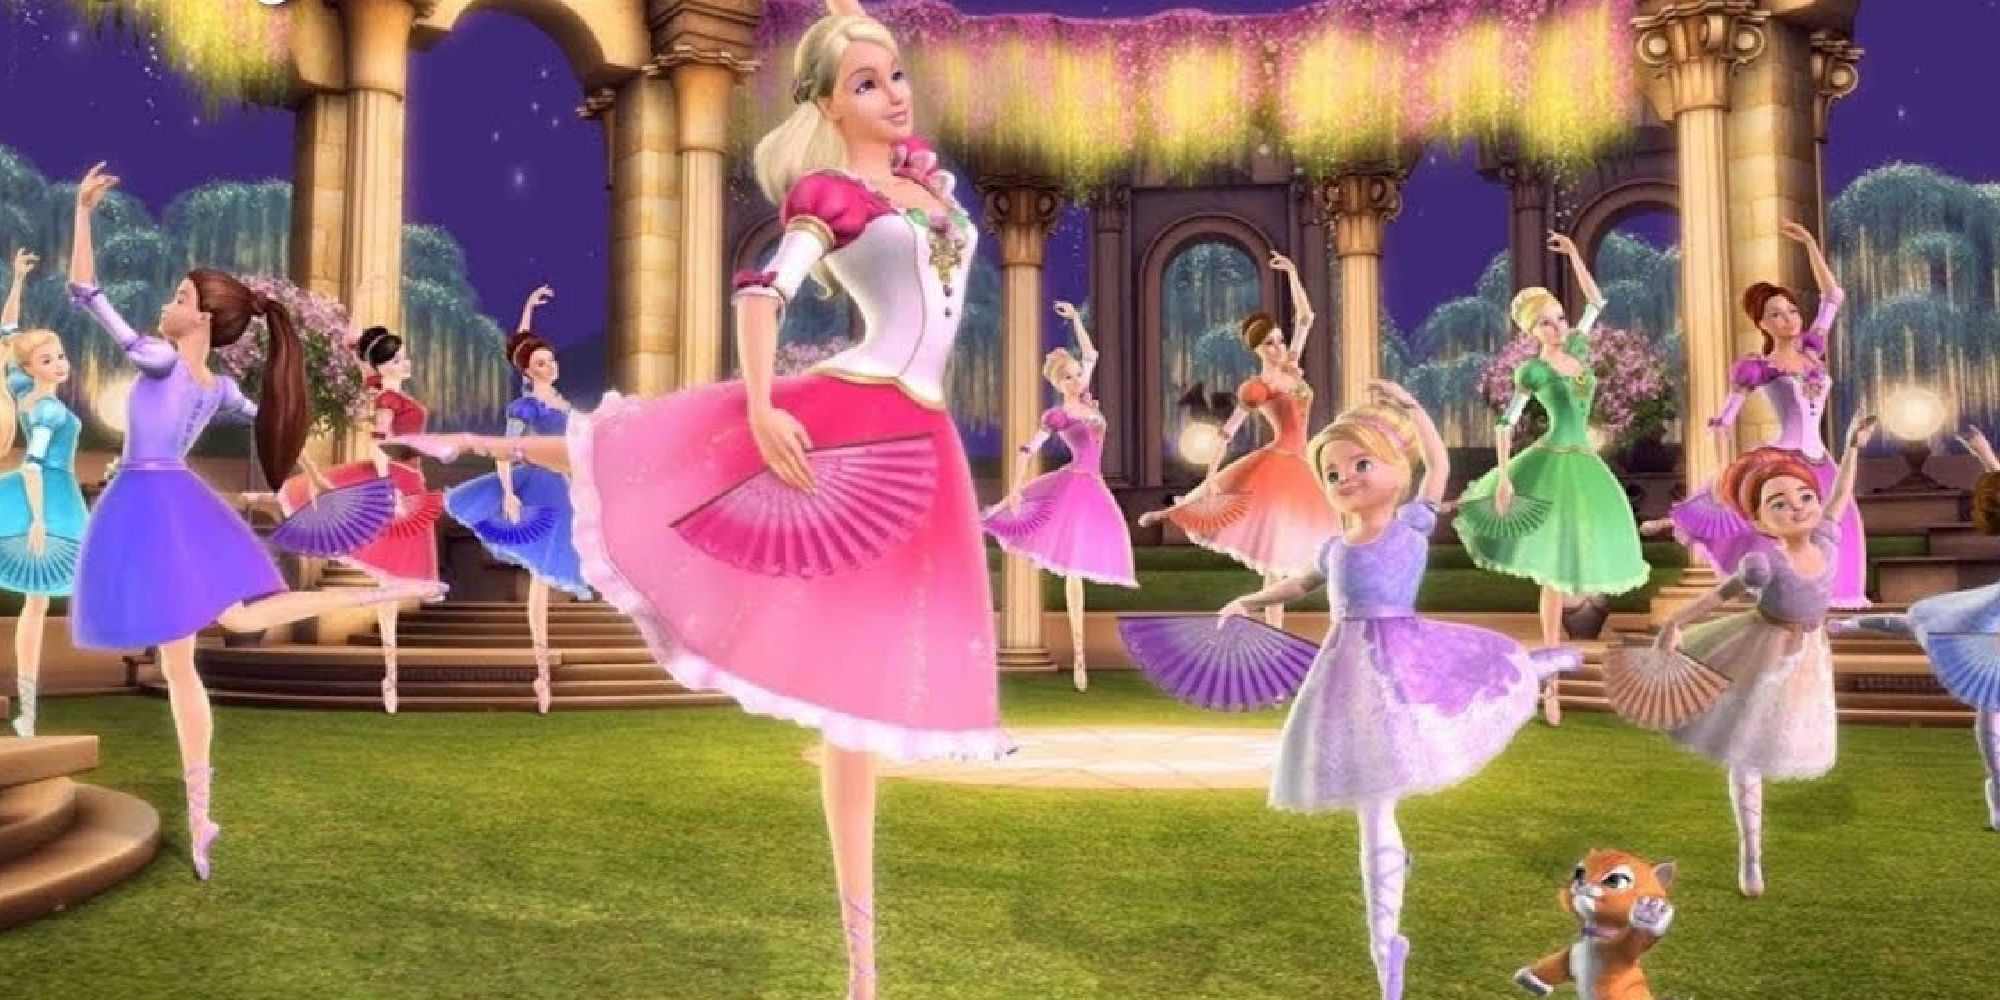 The 12 Dancing Barbie Princesses